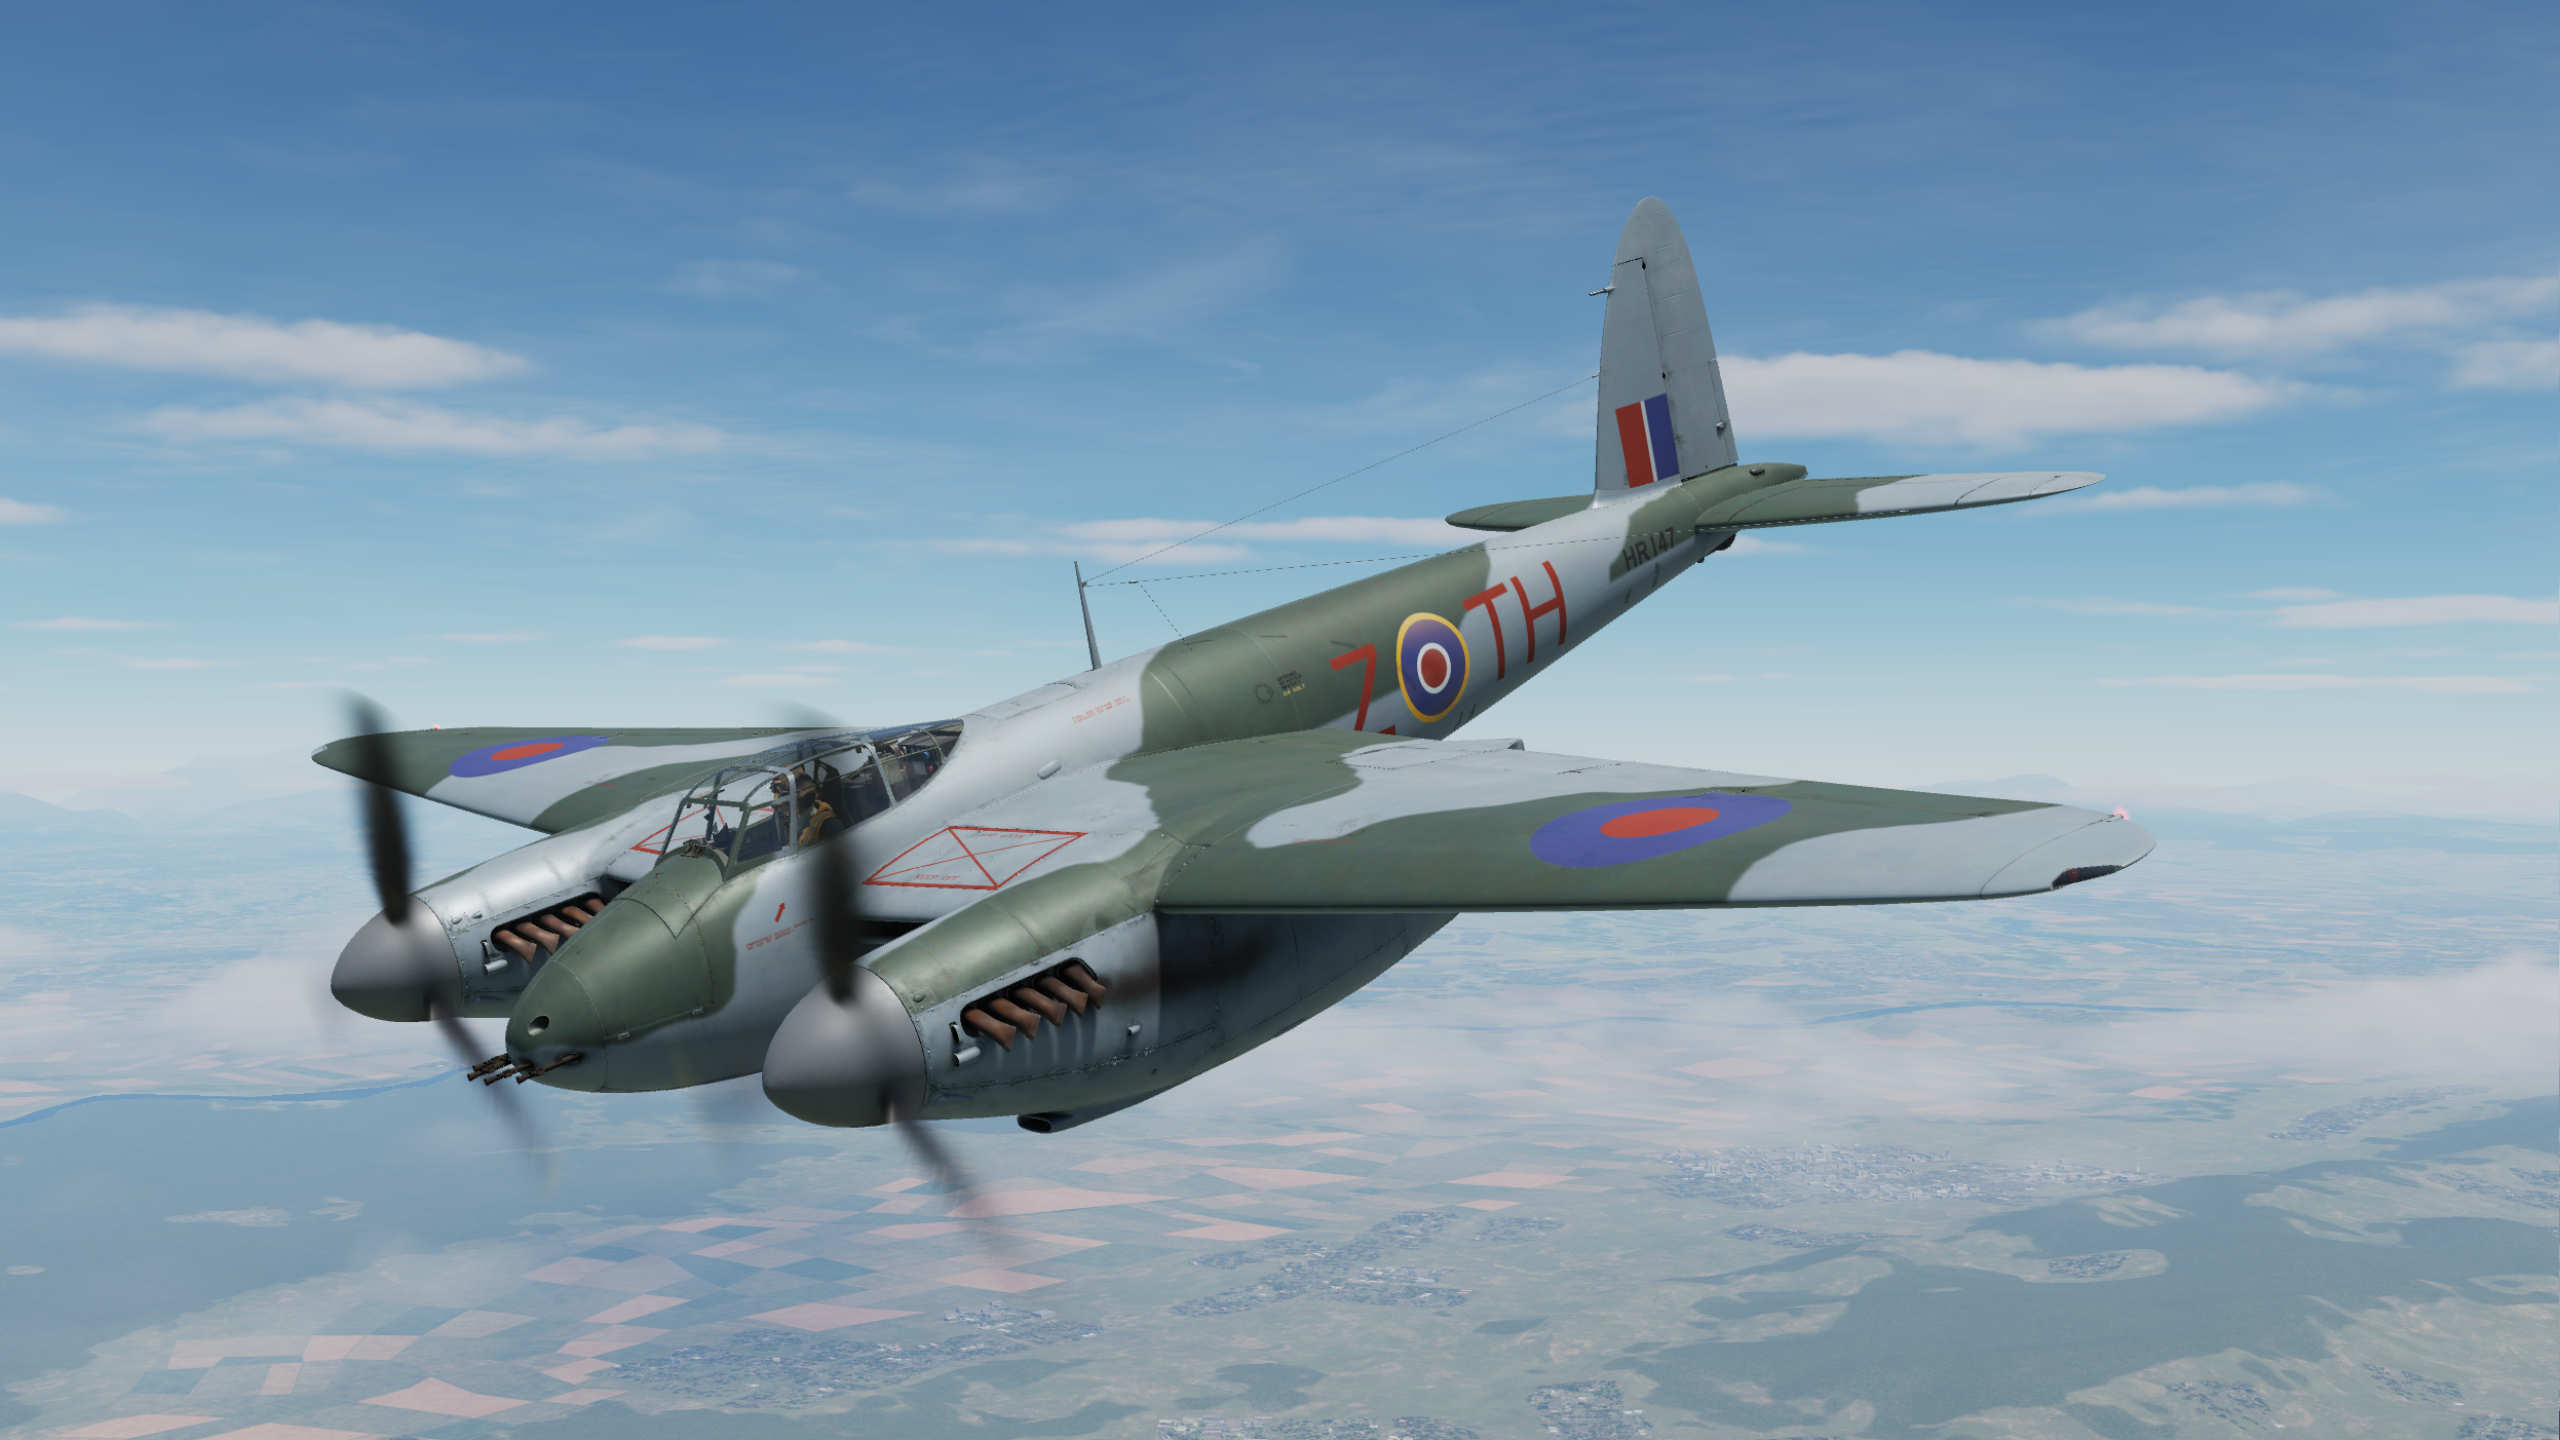 HR147 - RCAF